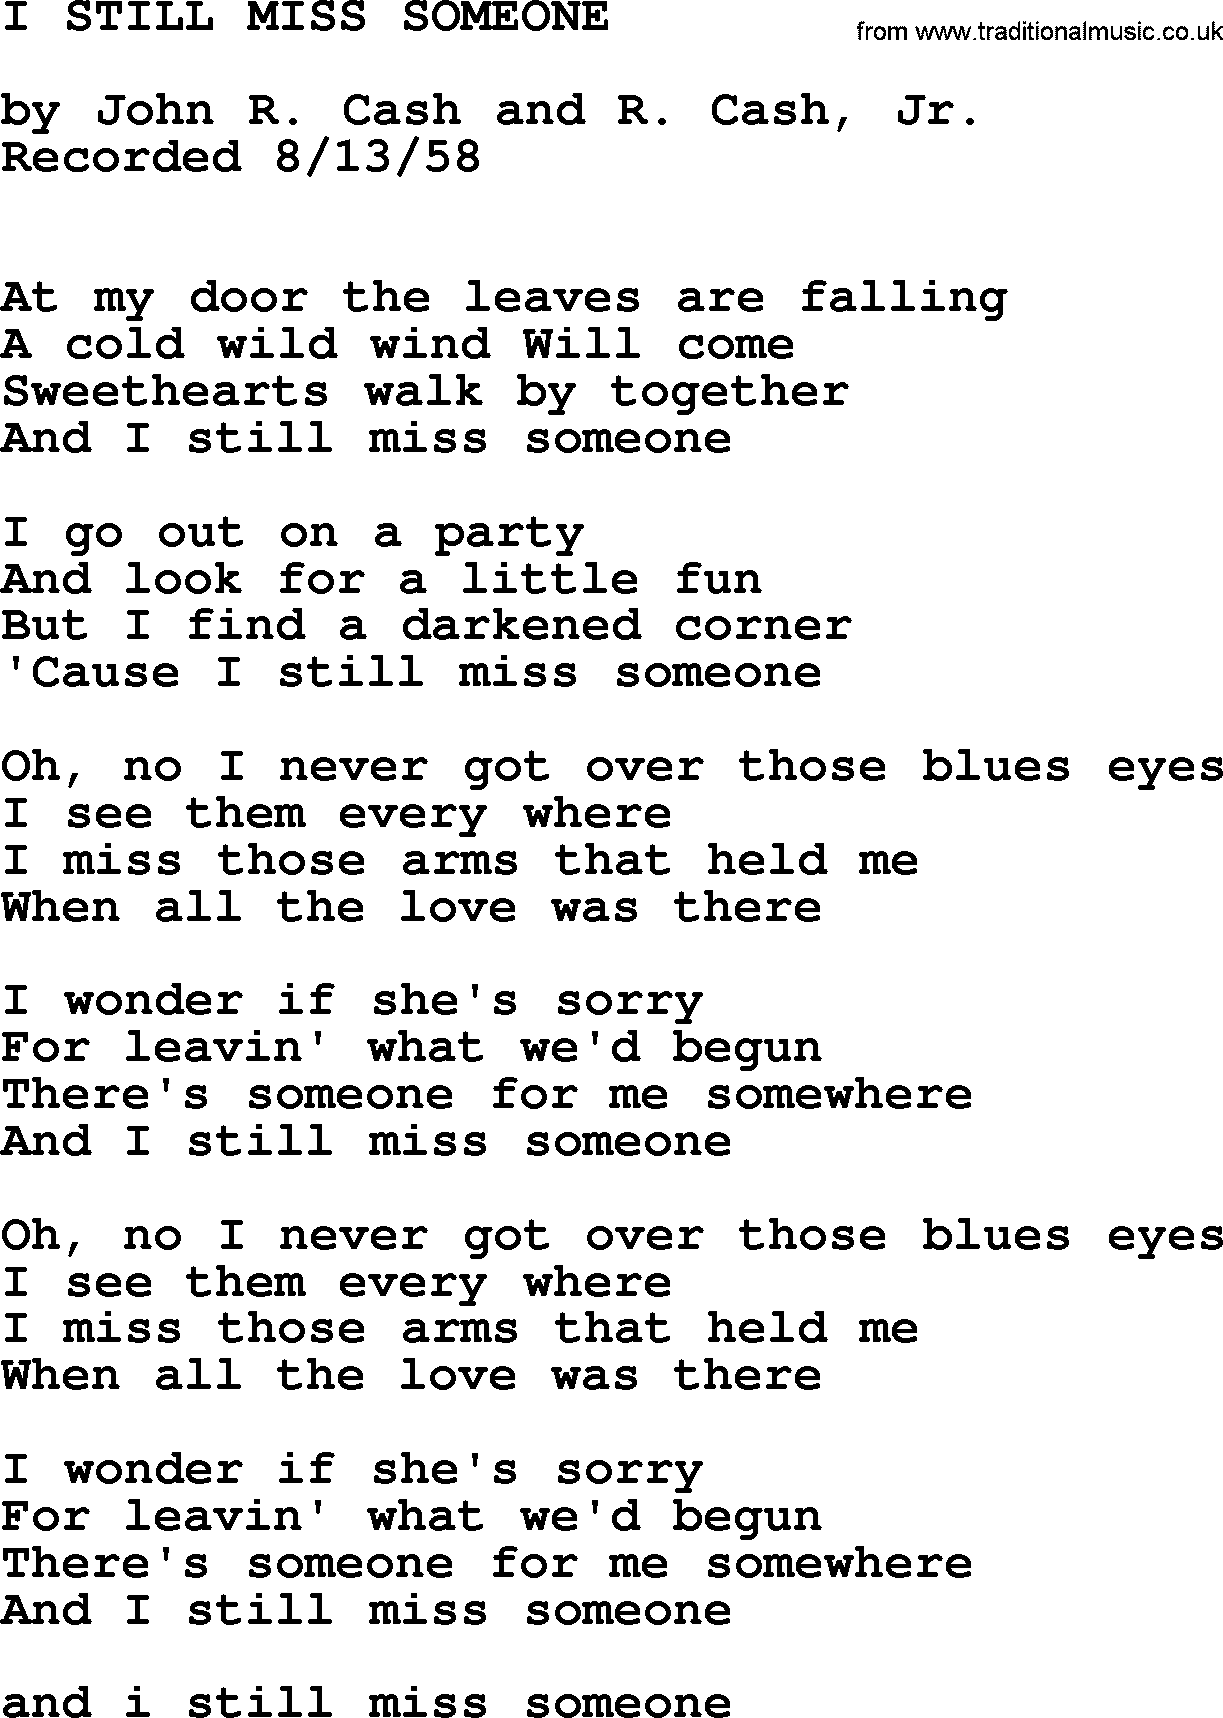 Johnny Cash song I Still Miss Someone.txt lyrics